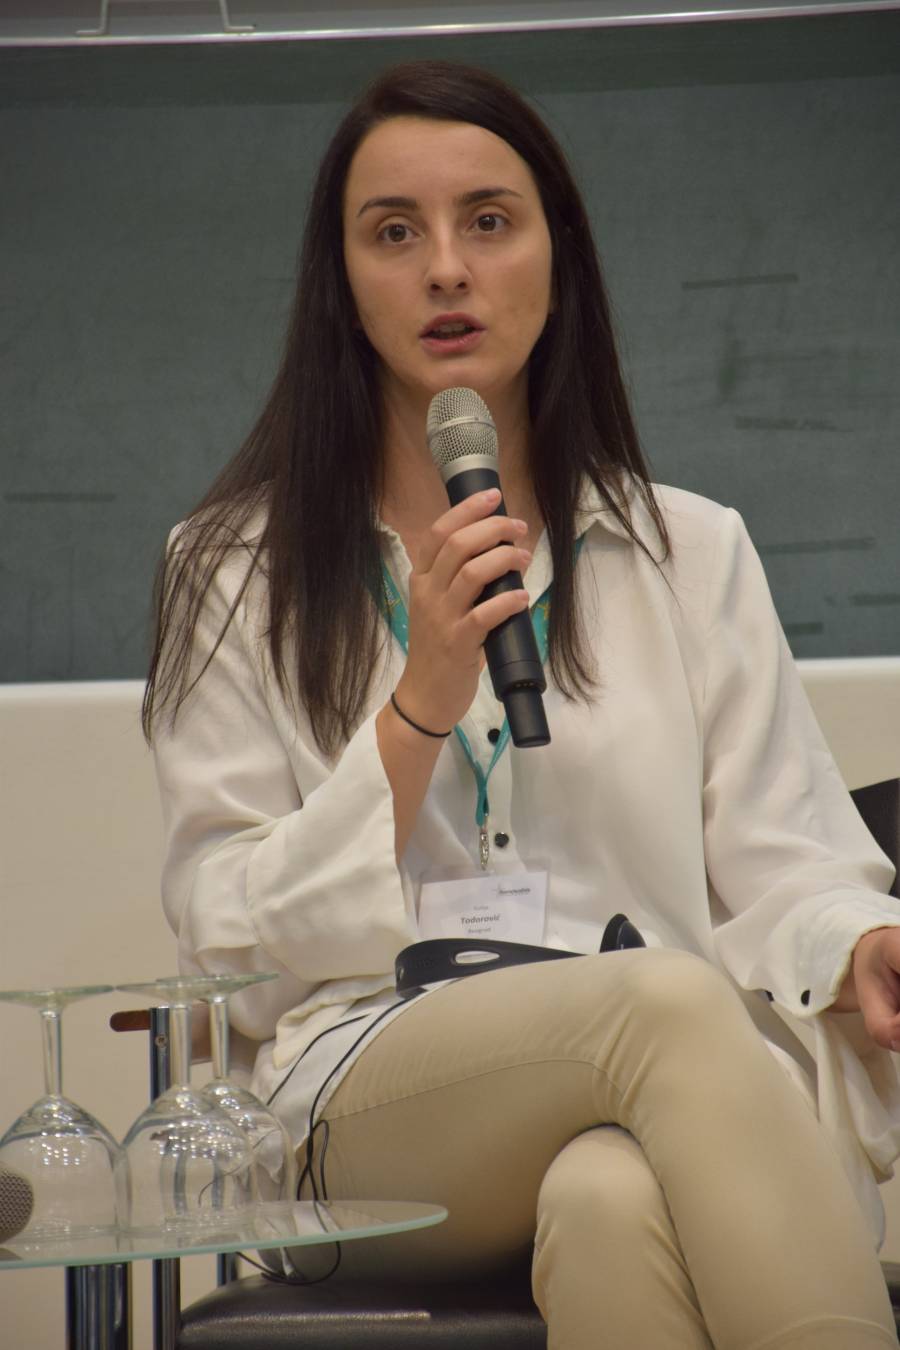 Sofija Todorović hat einen Bachelorabschluss der juristischen Fakultät der Universität Belgrad und arbeitet derzeit als Projektkoordinatorin für den Belgrader BIRN-Hub (Balkan Investigative Regional Reporting Network).<br><small class="stackrow__imagesource">Quelle: Renovabis </small>